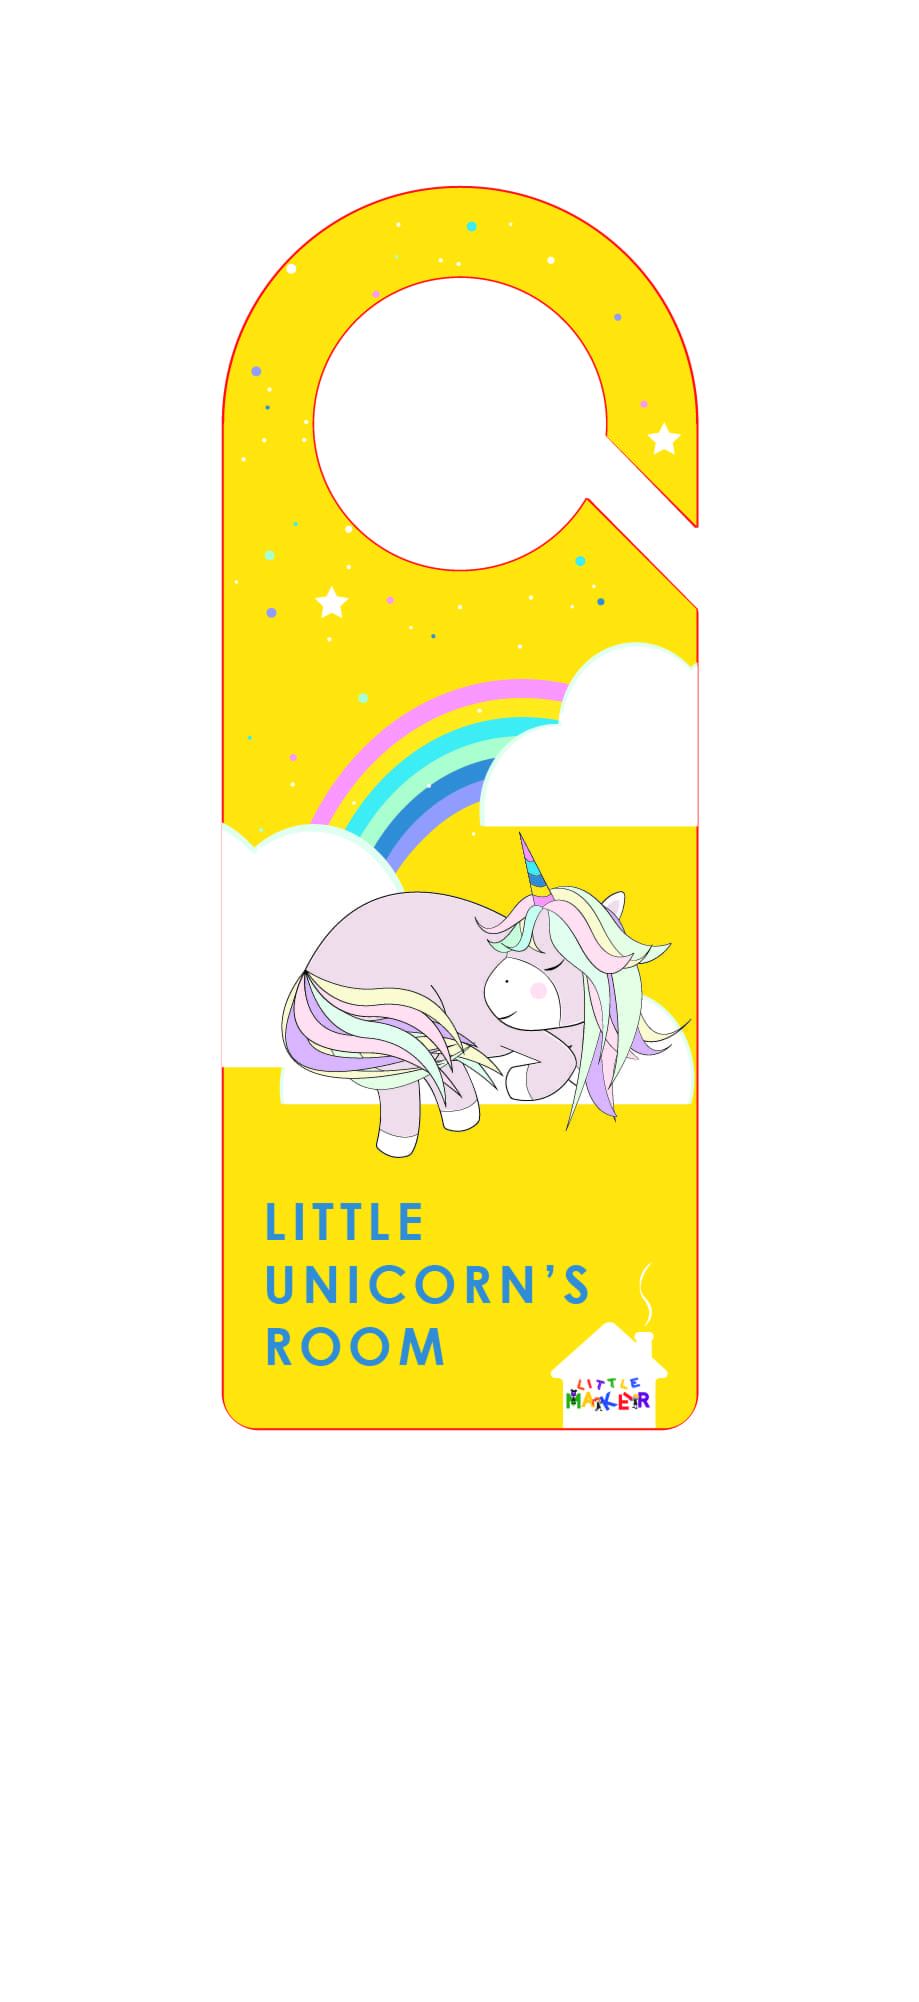 Little Maker Gift Boxes - Unicorn 2 resmi